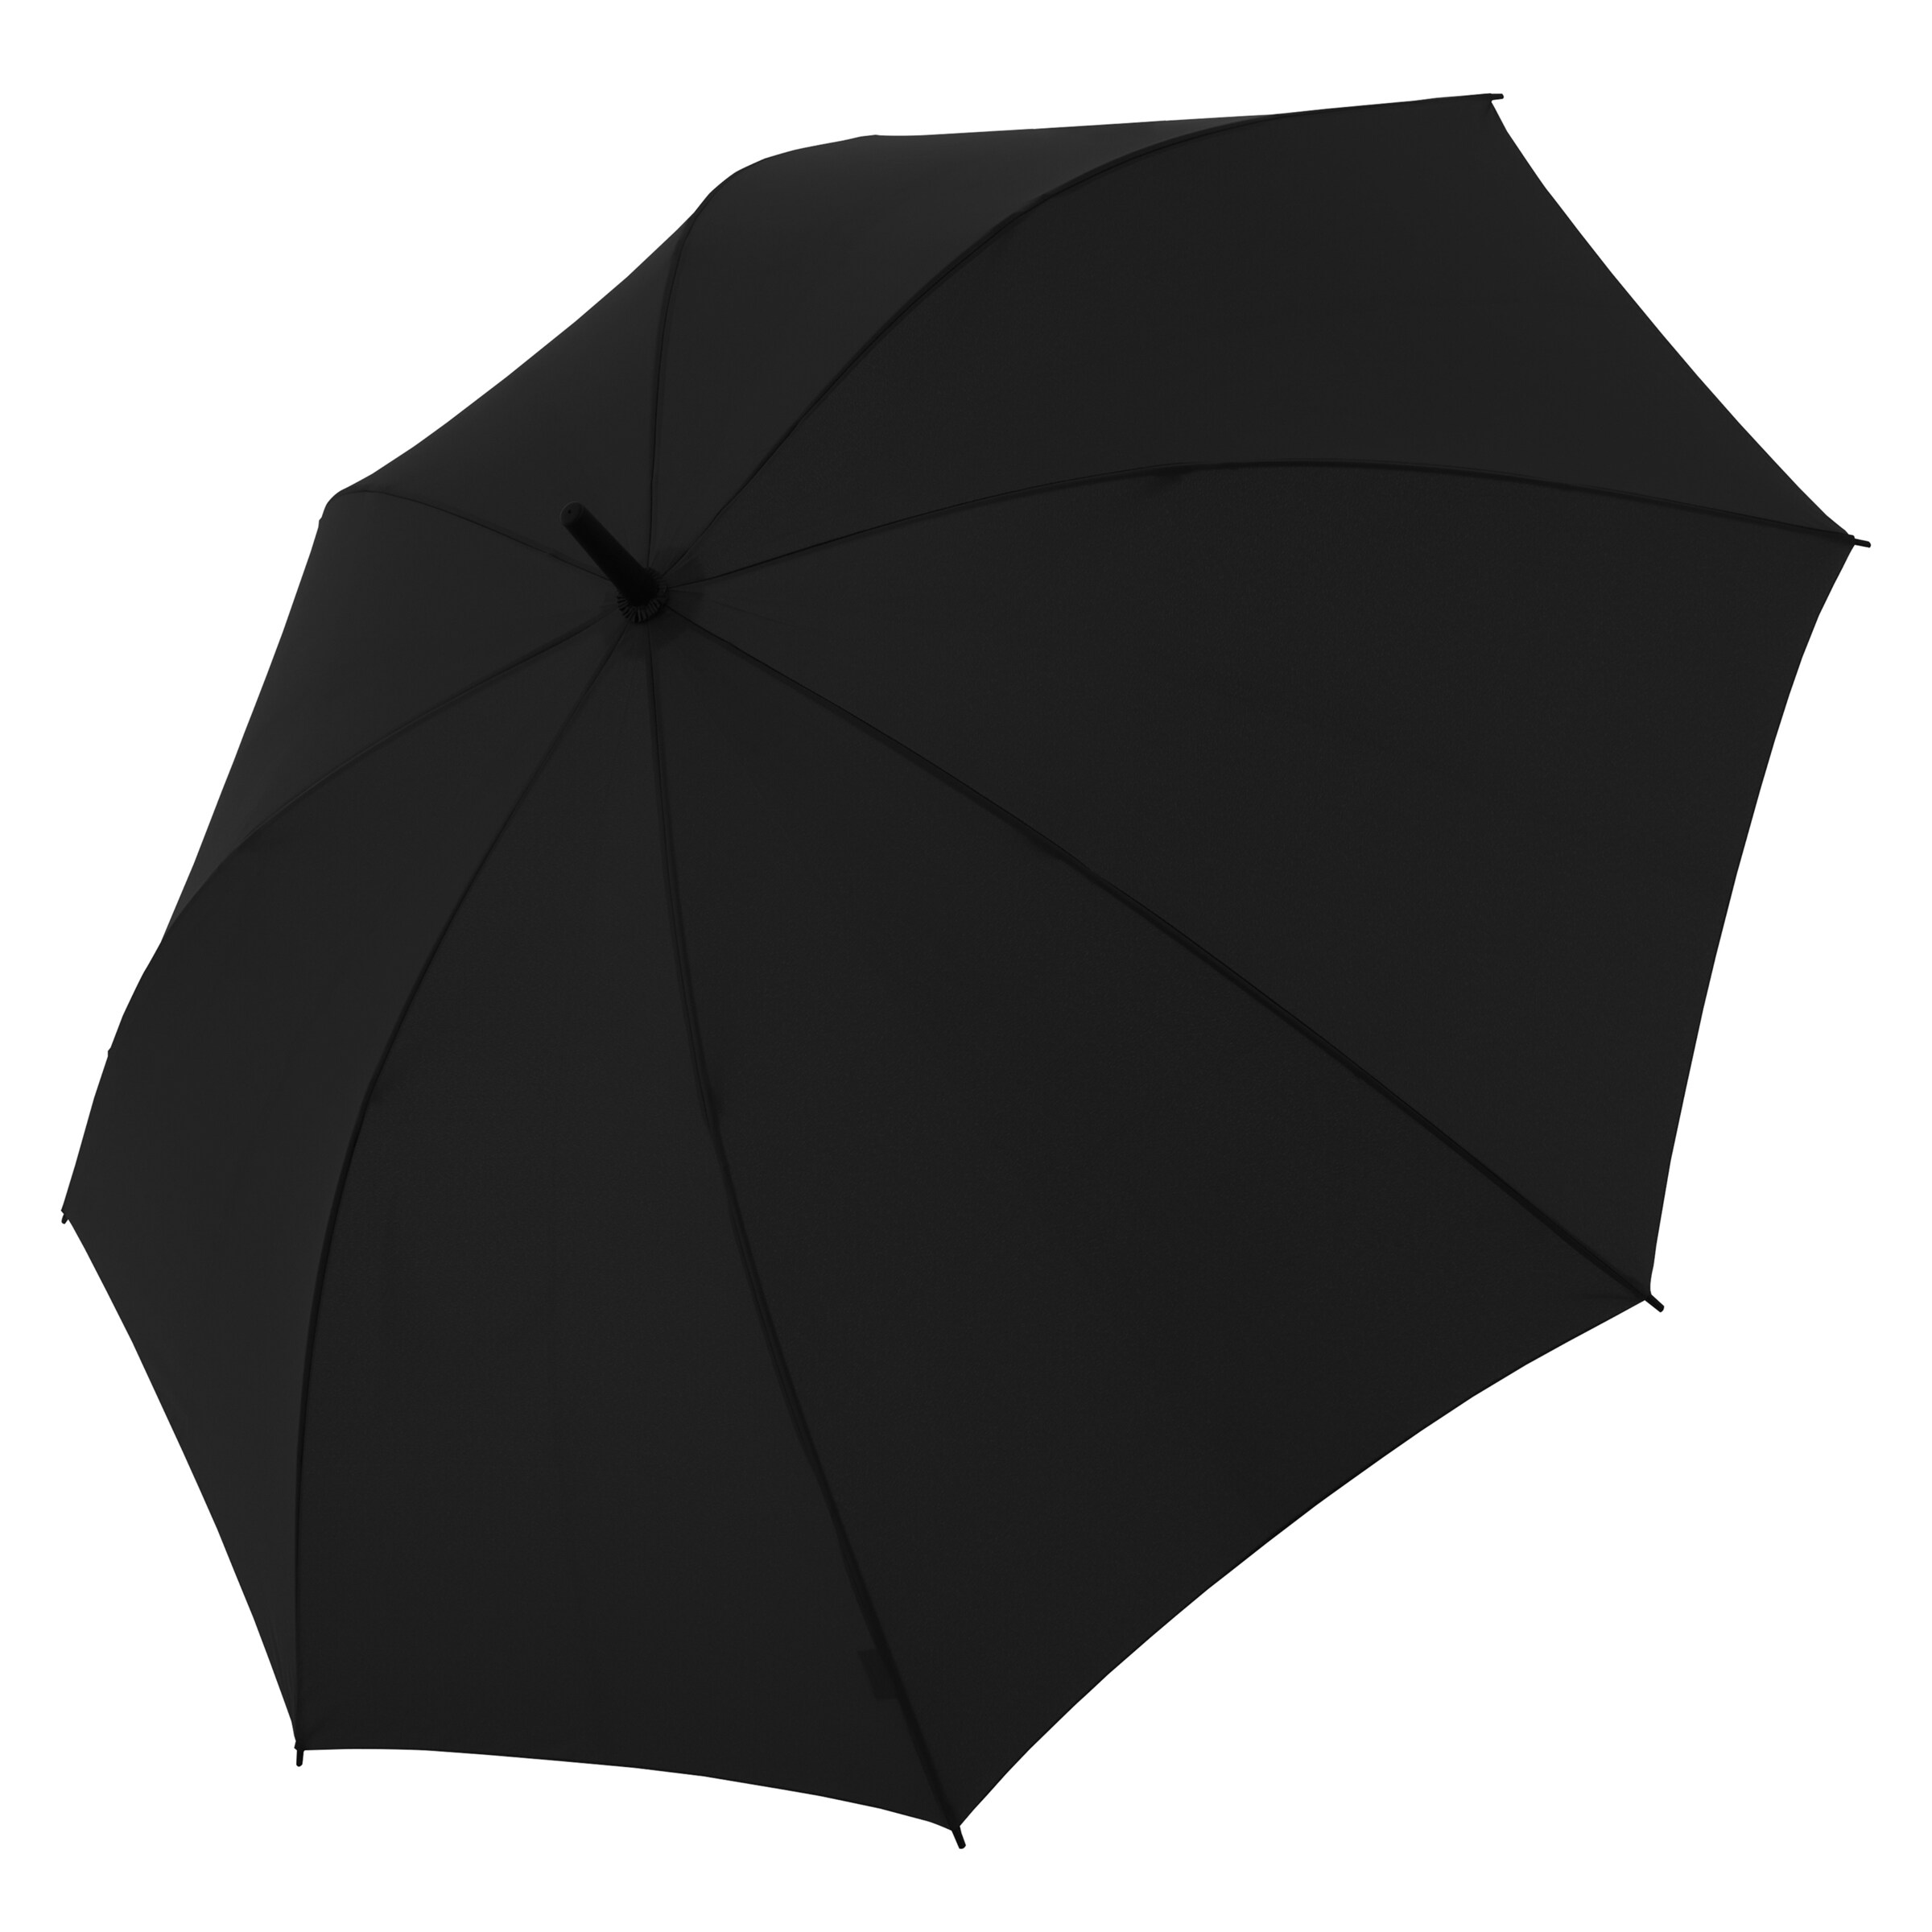 Frauen Regenschirme Doppler Regenschirm 'Zero' in Schwarz - YI81660